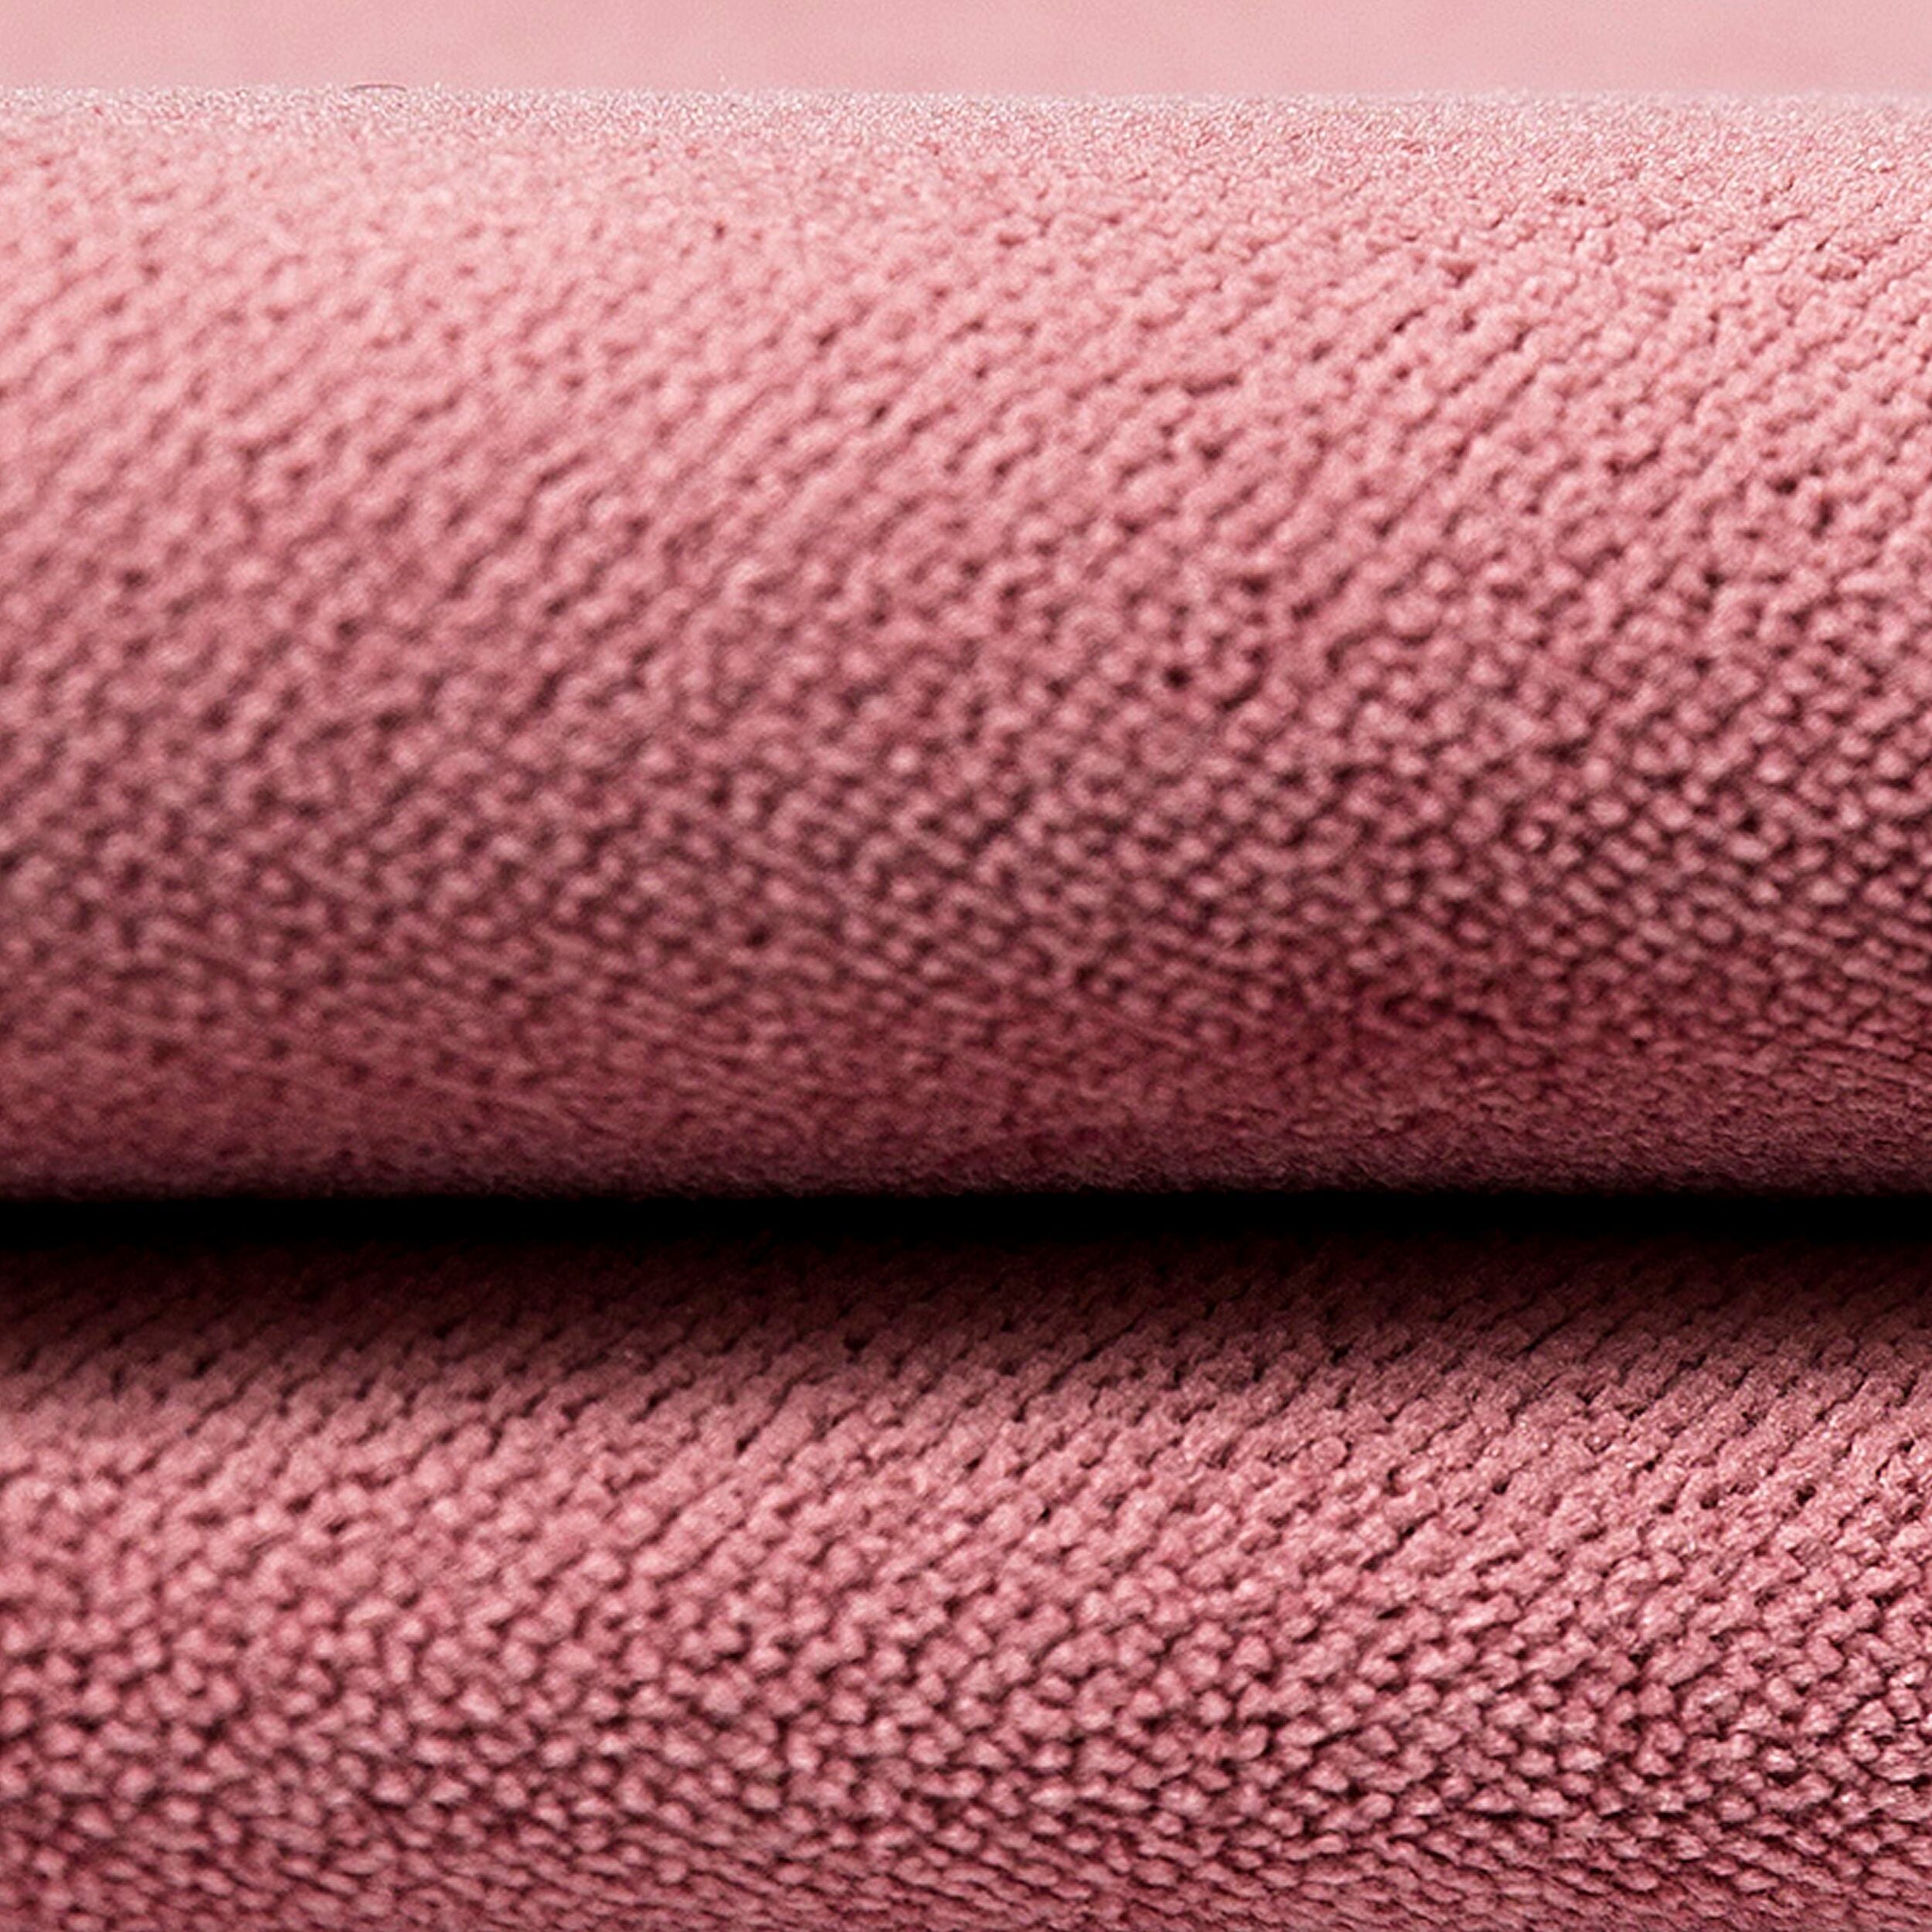 McAlister Textiles Matt Blush Pink Velvet Curtains Tailored Curtains 